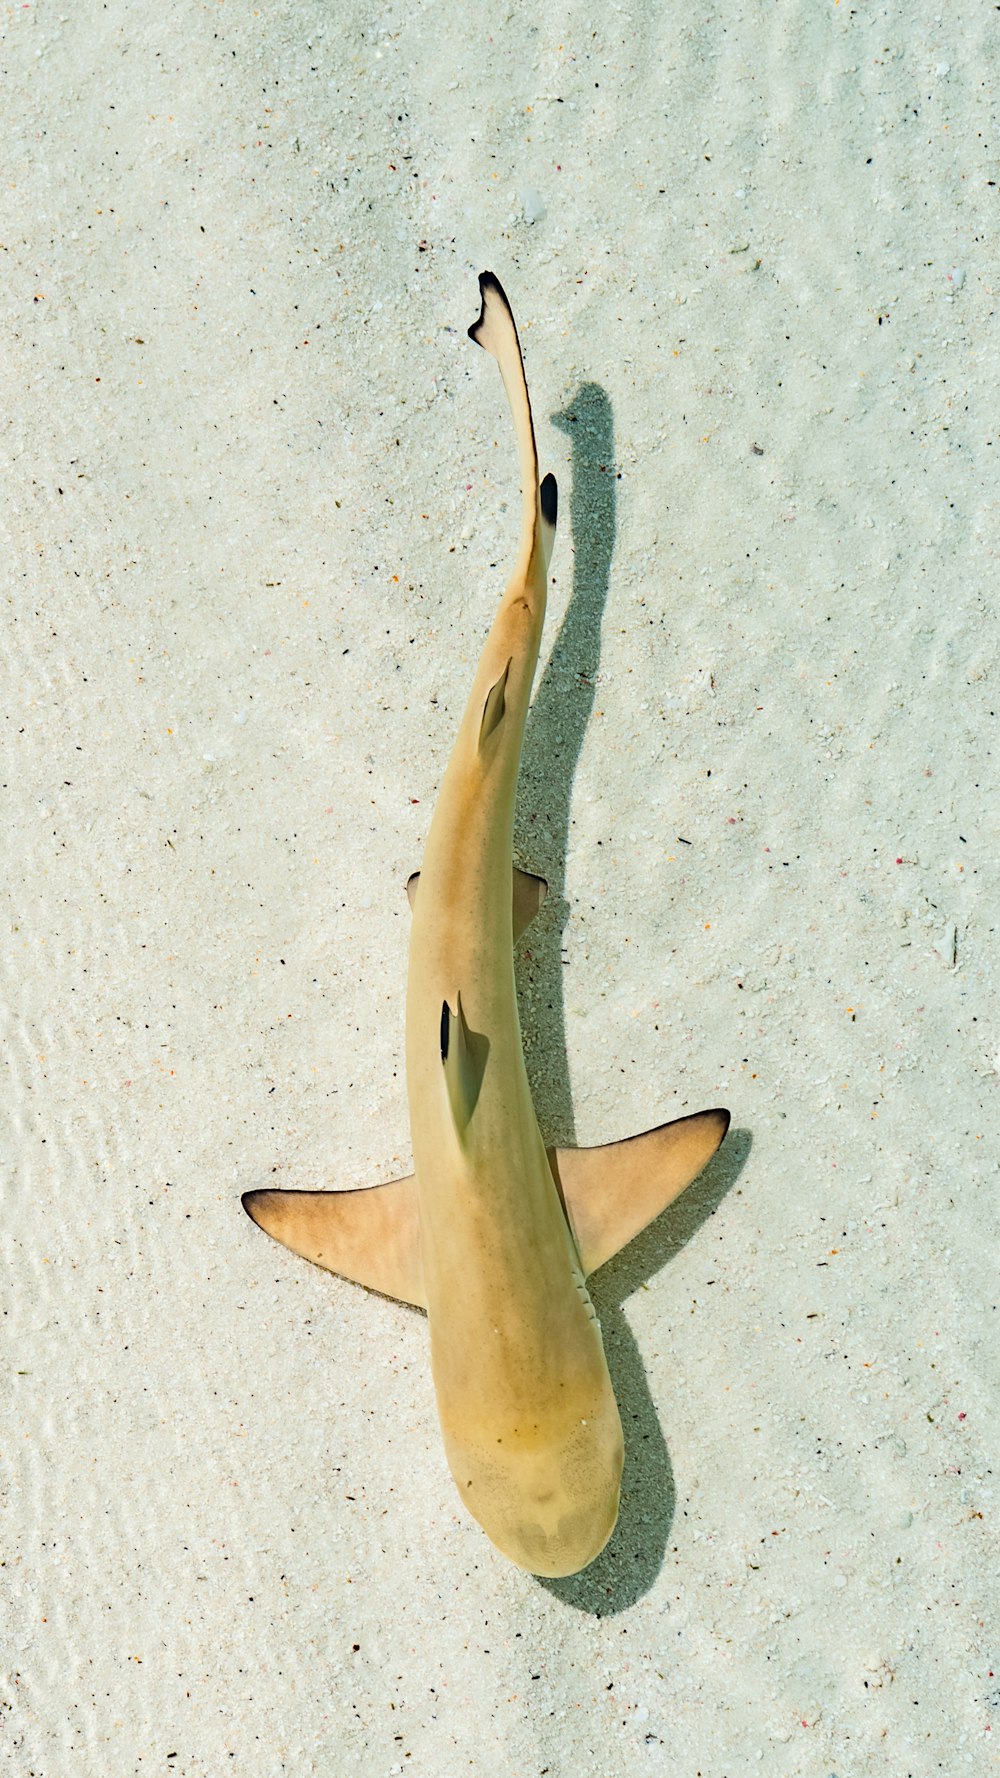 cauda de tubarão branco e preto